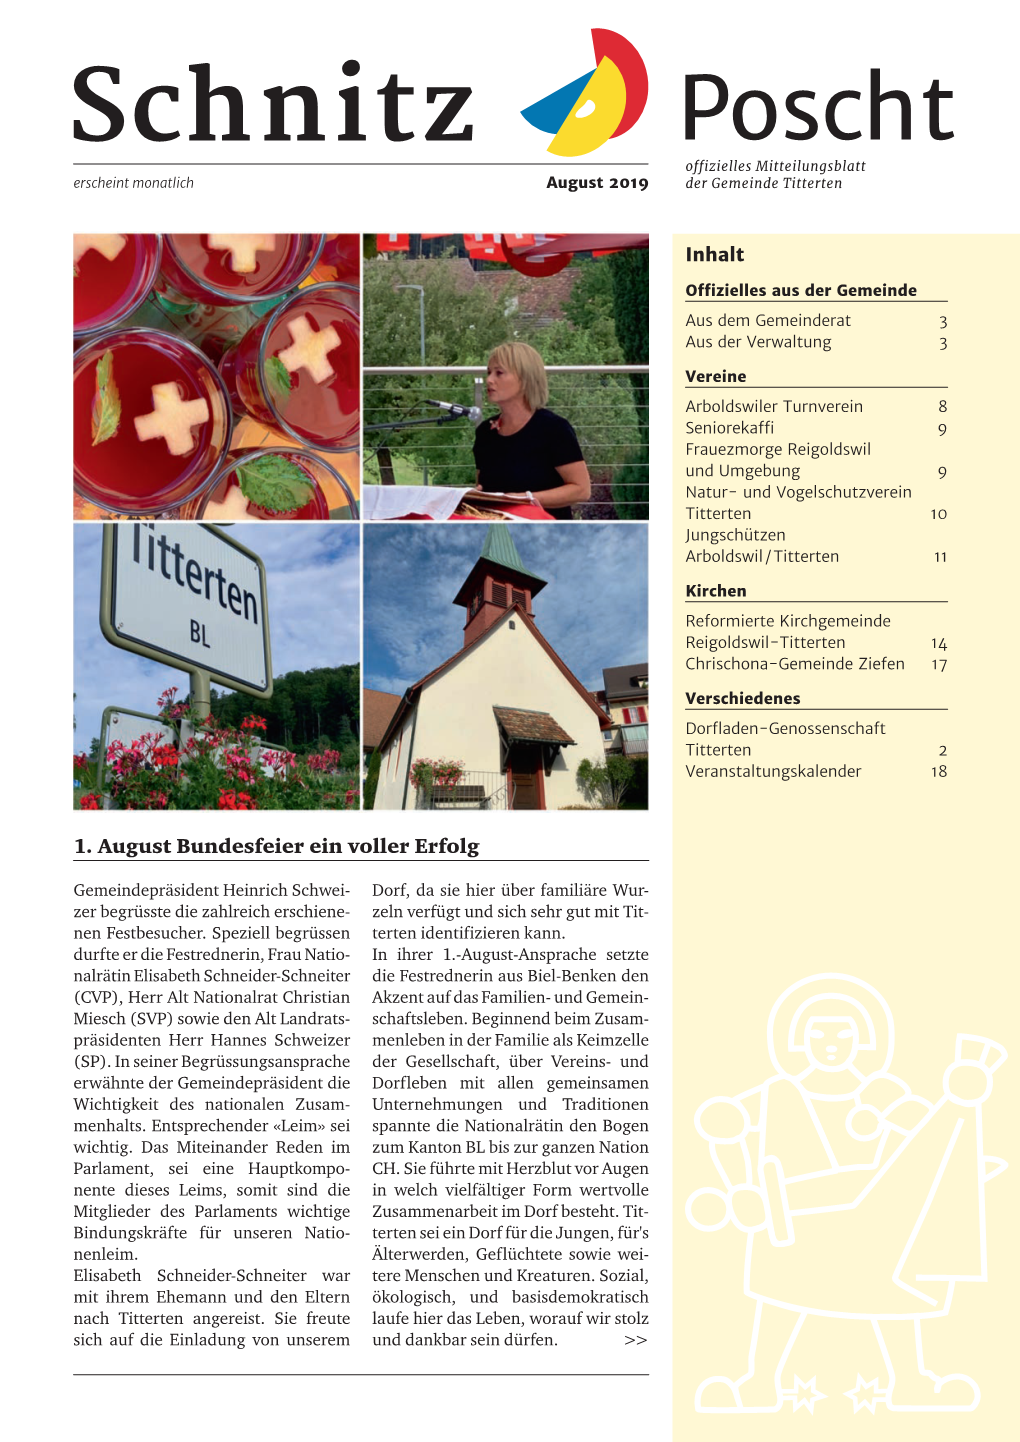 Schnitz Poscht Offizielles Mitteilungsblatt Erscheint Monatlich August 2019 Der Gemeinde Titterten